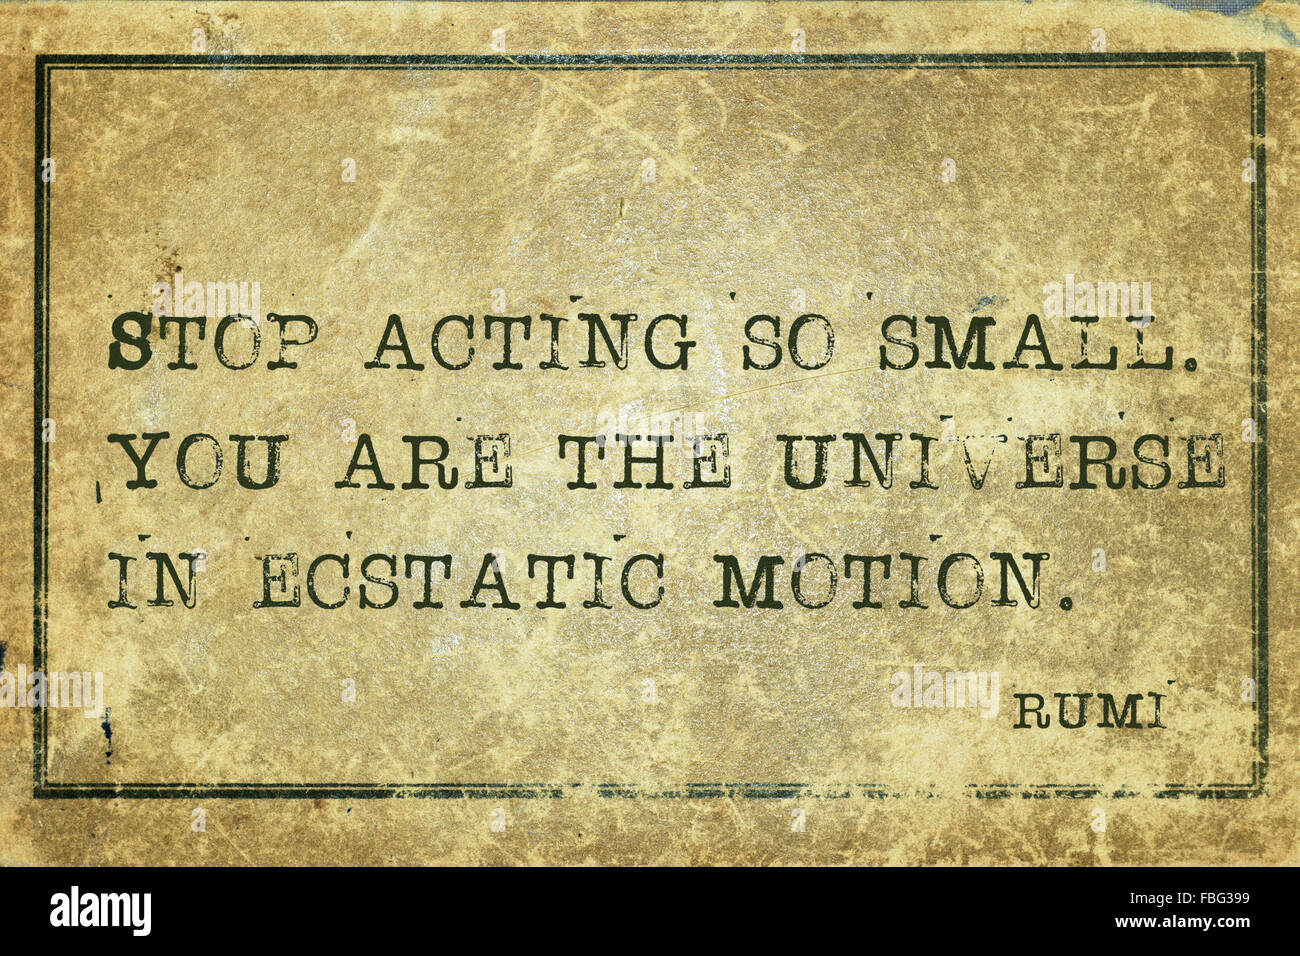 Smettere di agire così piccolo. Voi siete l'universo - Persiano antico poeta e filosofo Rumi preventivo stampato su grunge cartone vintage Foto Stock